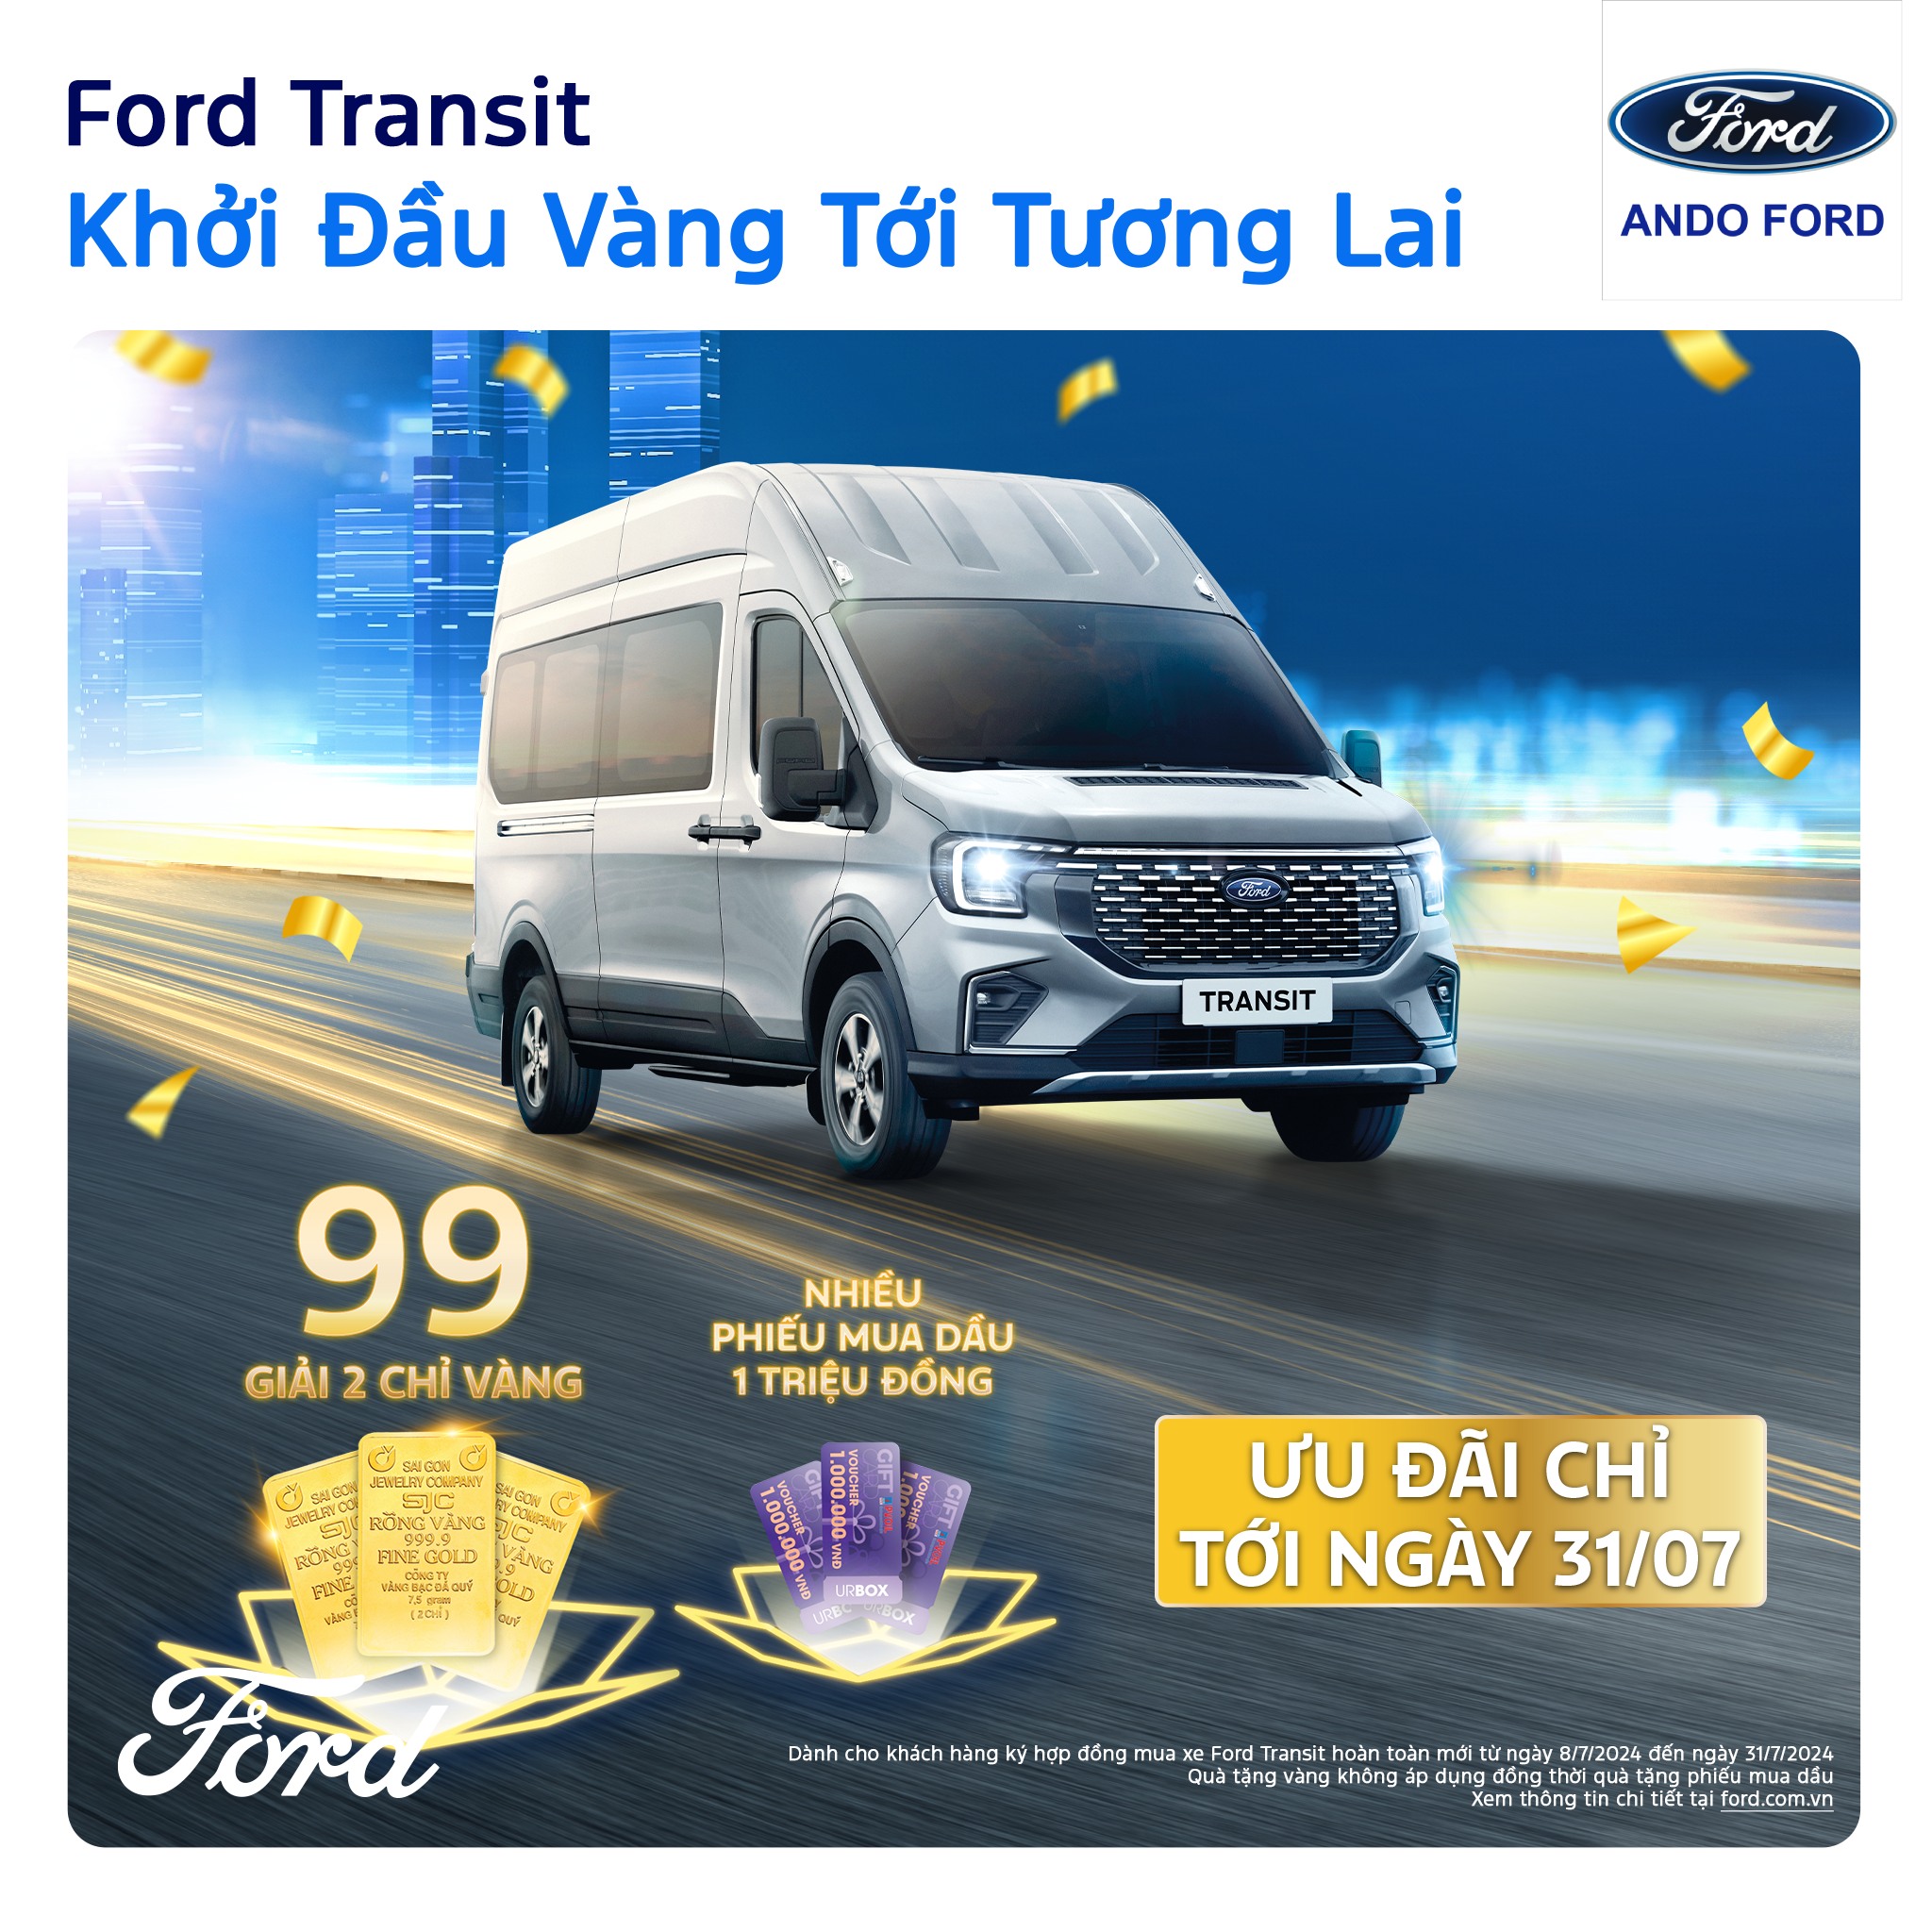 Ford Transit – “KHỞI ĐẦU VÀNG TỚI TƯƠNG LAI”